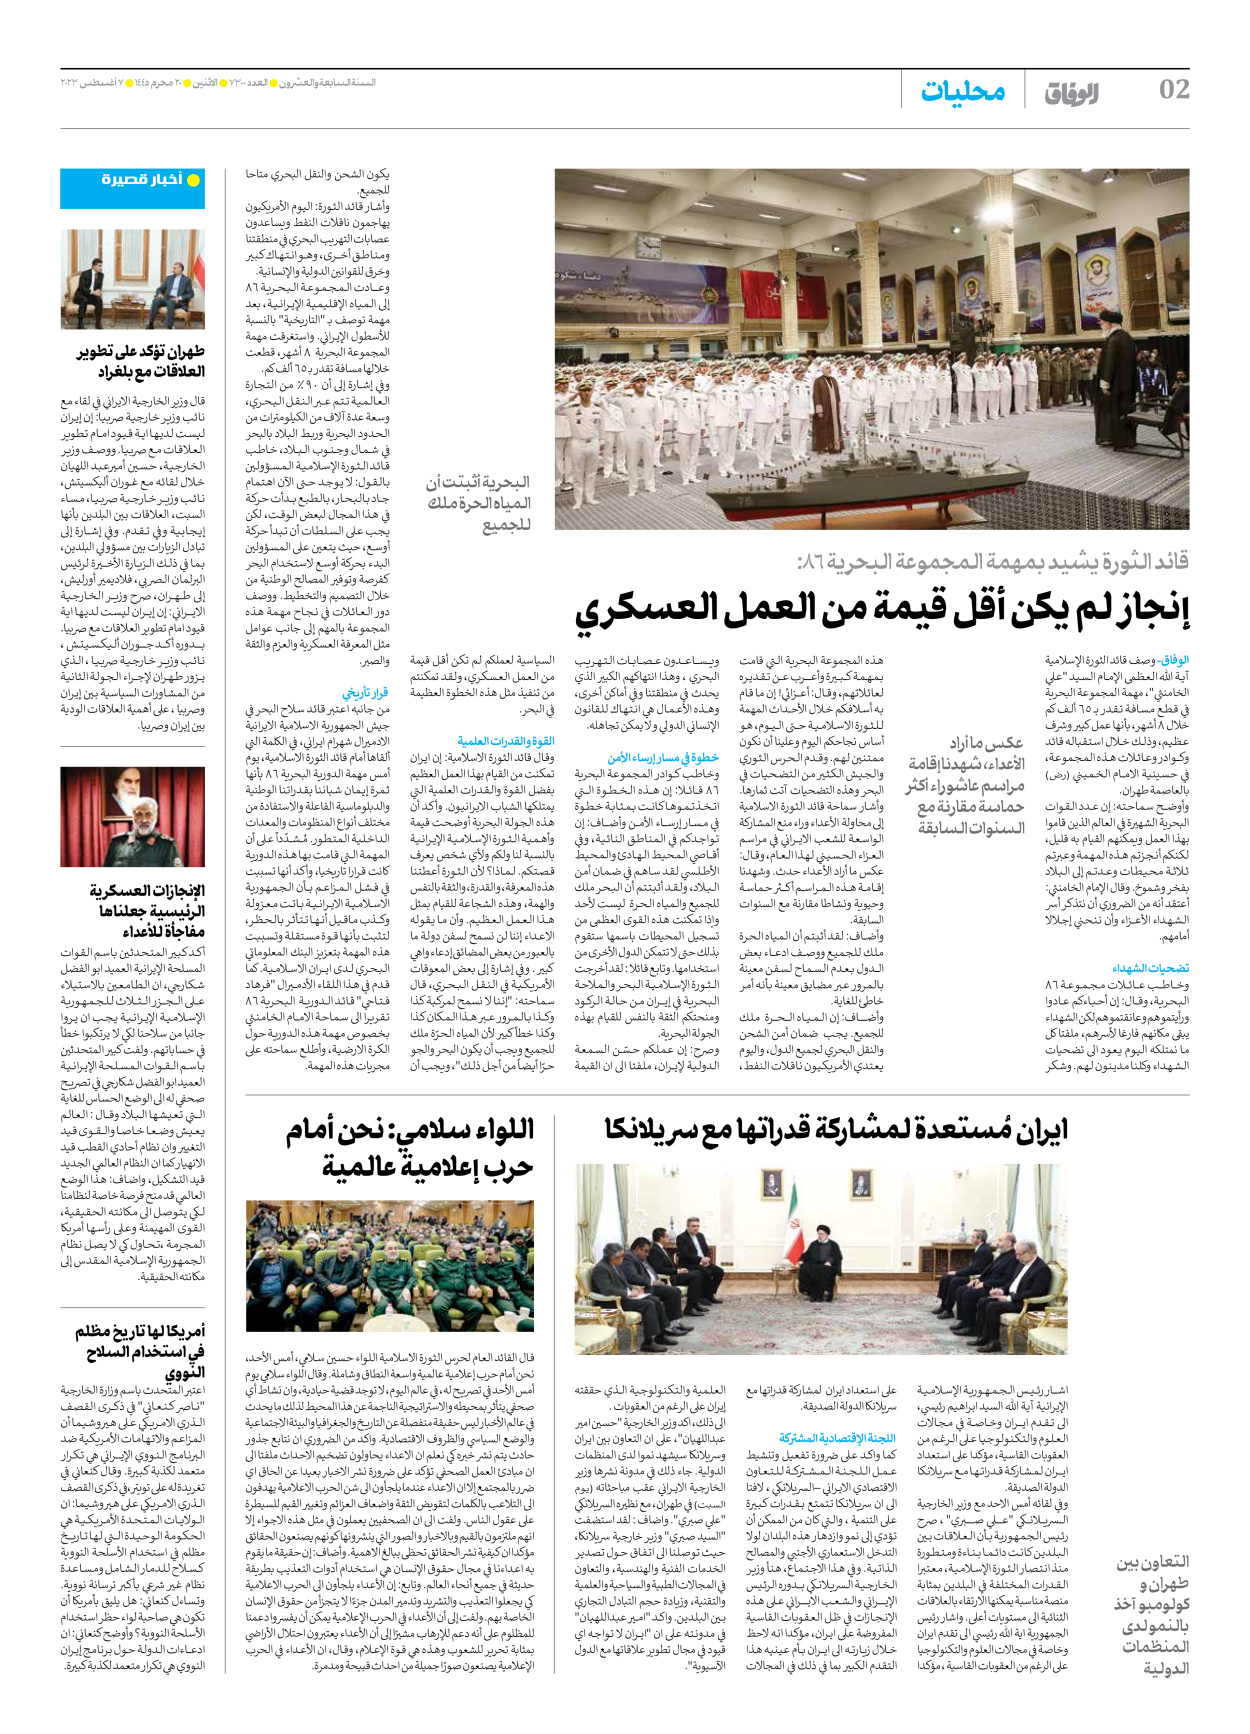 صحیفة ایران الدولیة الوفاق - العدد سبعة آلاف وثلاثمائة - ٠٧ أغسطس ٢٠٢٣ - الصفحة ۲